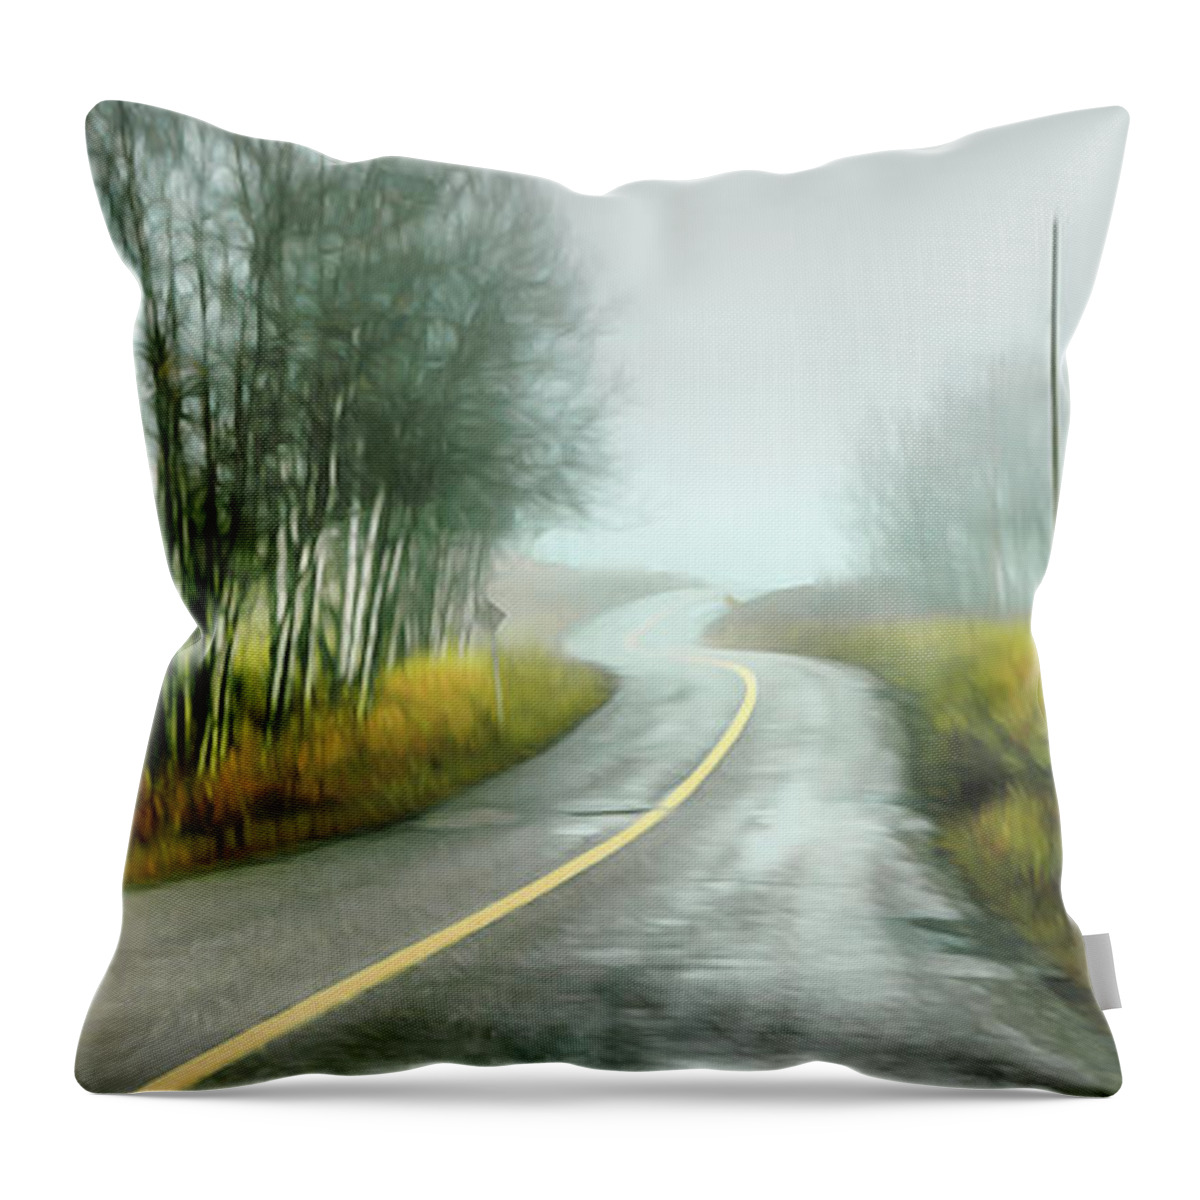 Theresa Tahara Throw Pillow featuring the photograph Fog Up By Pinantan Lake by Theresa Tahara